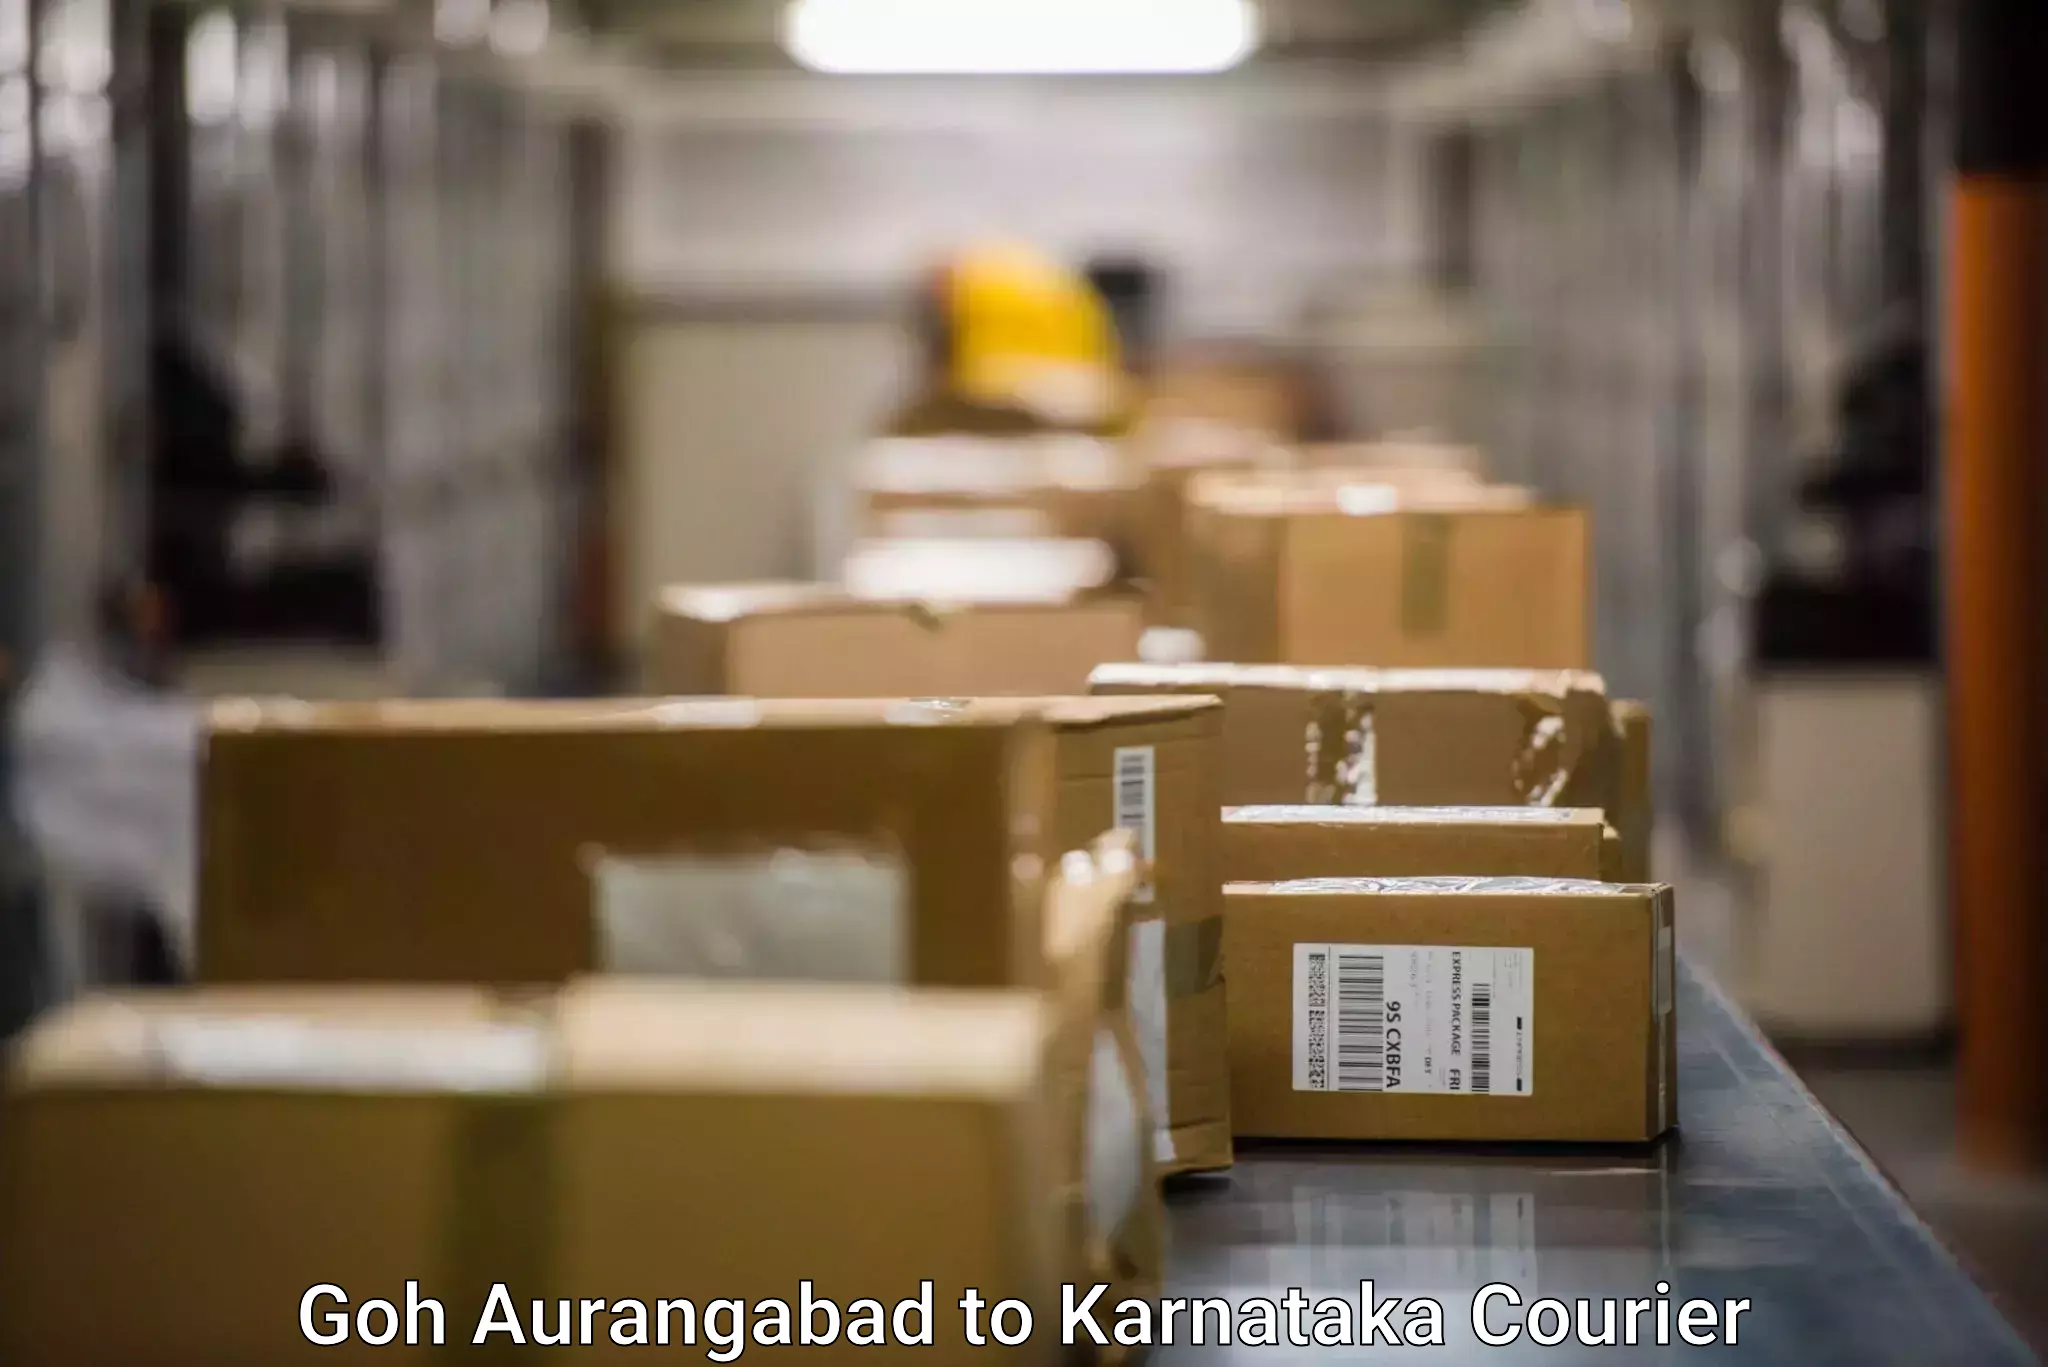 Personalized courier experiences Goh Aurangabad to Chikkamagaluru